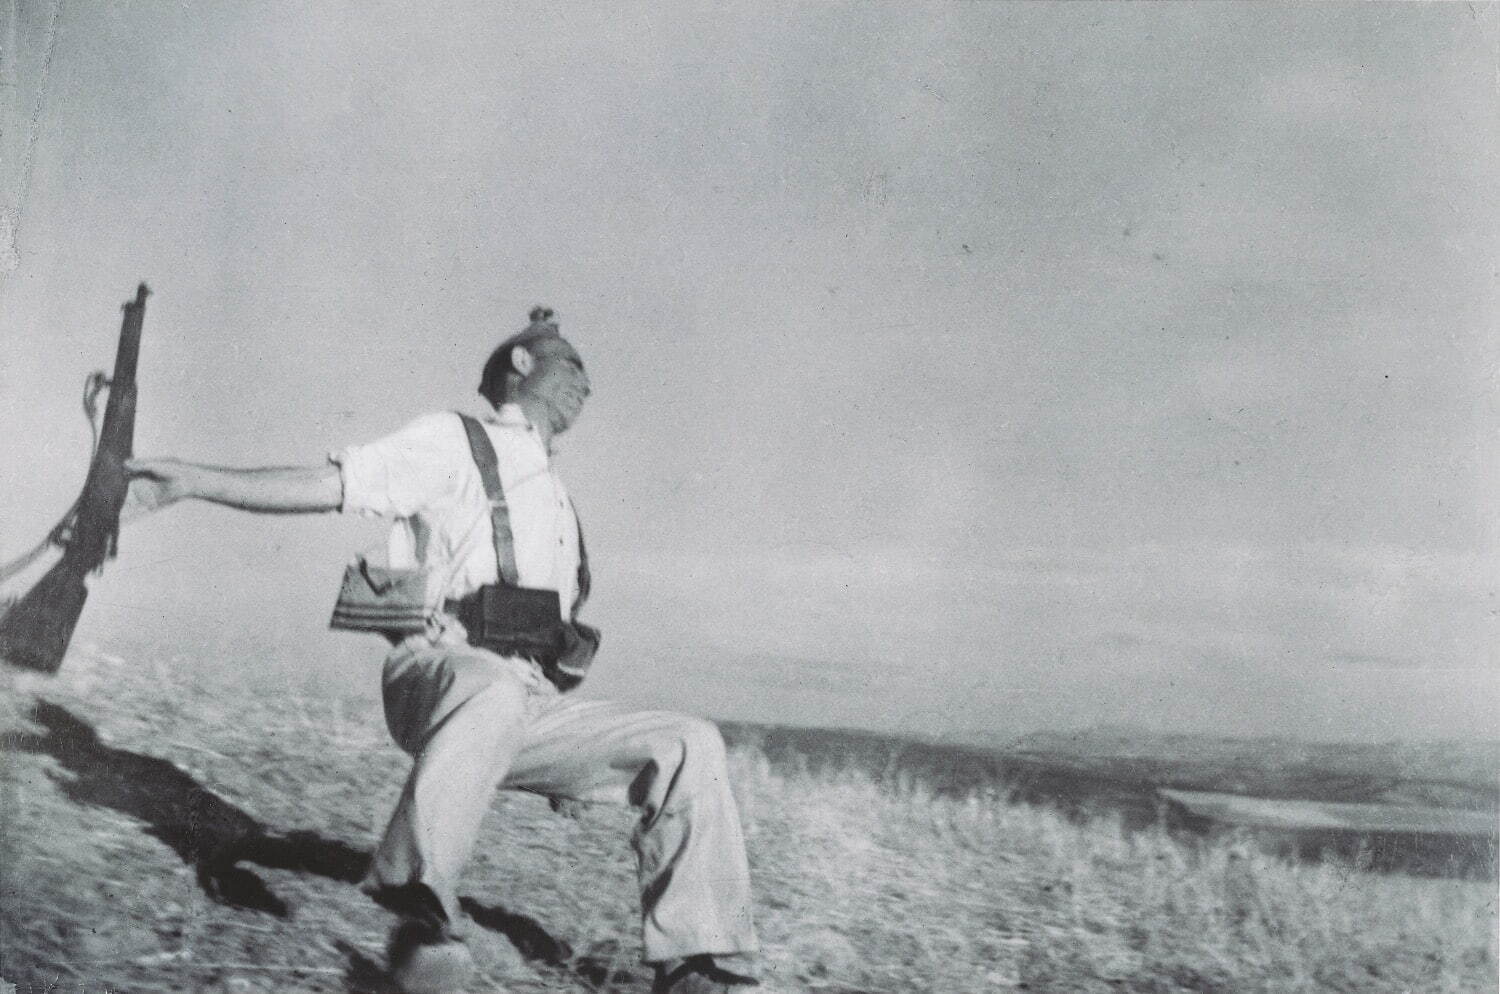 共和国派民兵の死(「崩れ落ちる兵士」)(1936年9月)　東京富士美術館所蔵
The Robert Capa and Cornell Capa Archive